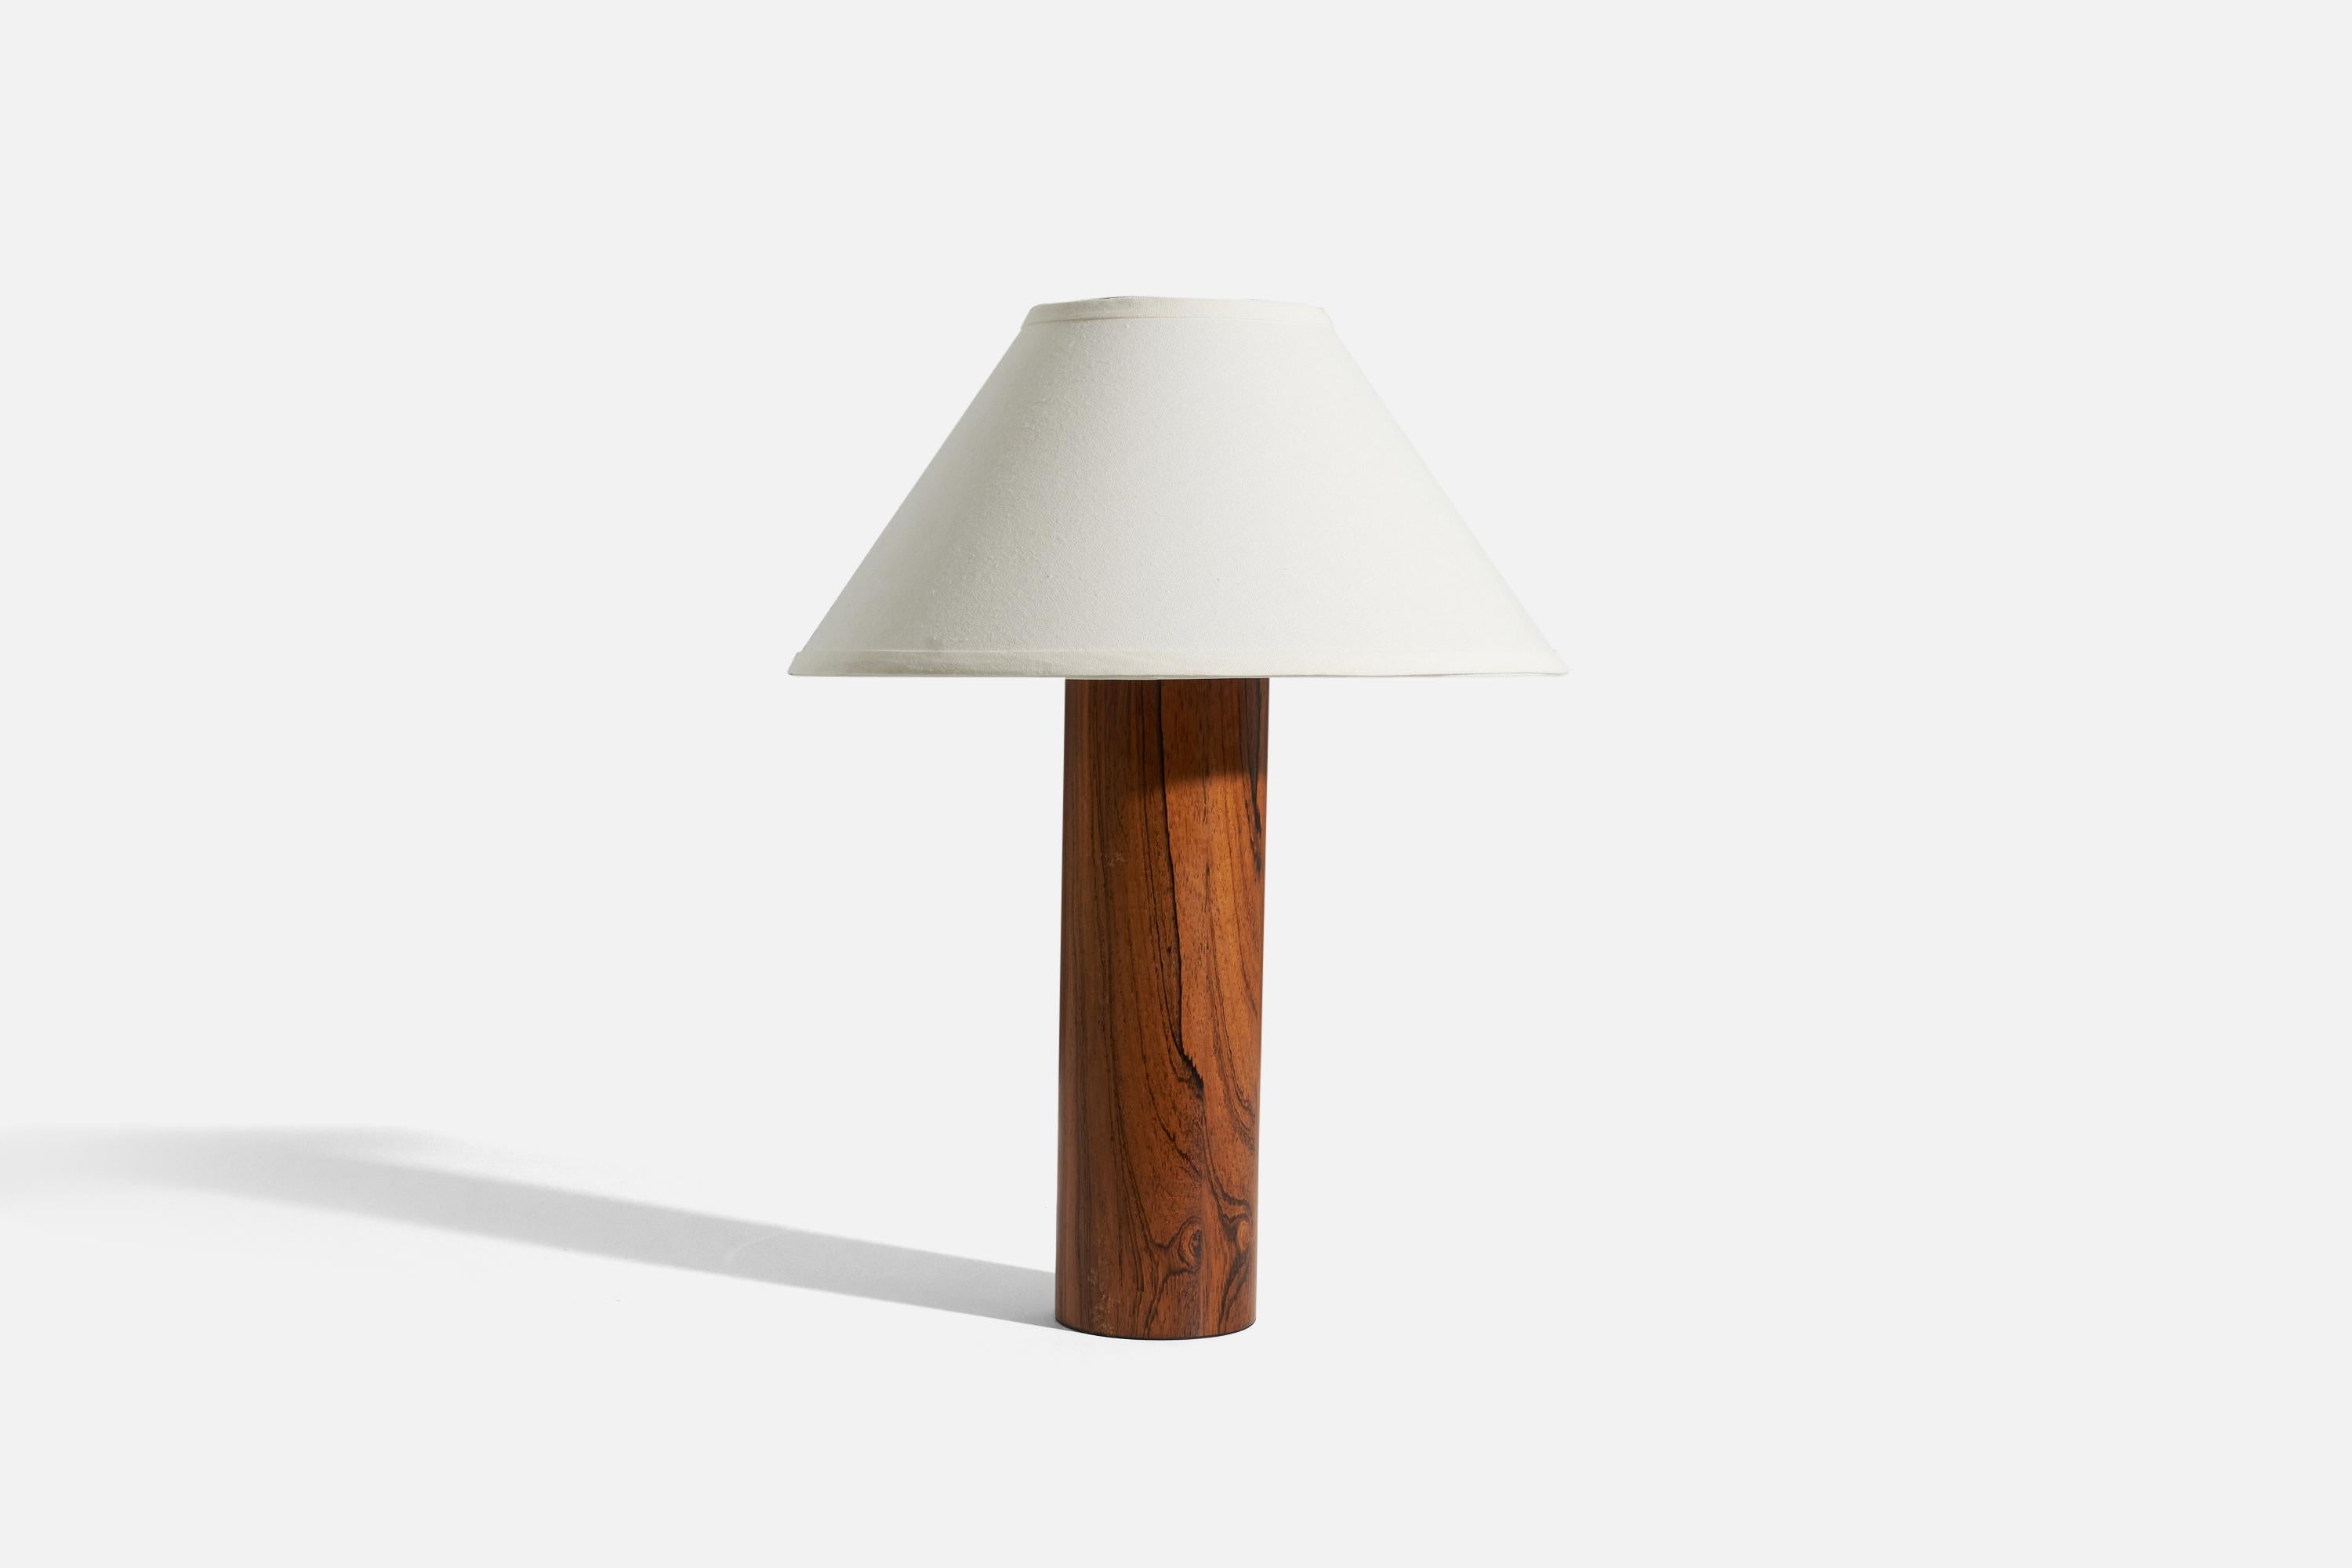 Lampe de table en bois de rose conçue et produite par Luxus Vittsjö, Suède, vers les années 1960.

Vendu sans abat-jour. 
Dimensions de la lampe (pouces) : 18.1875 x 4,25 x 4,25 (H x L x P)
Dimensions de l'abat-jour (pouces) : 6.25 x 16,25 x